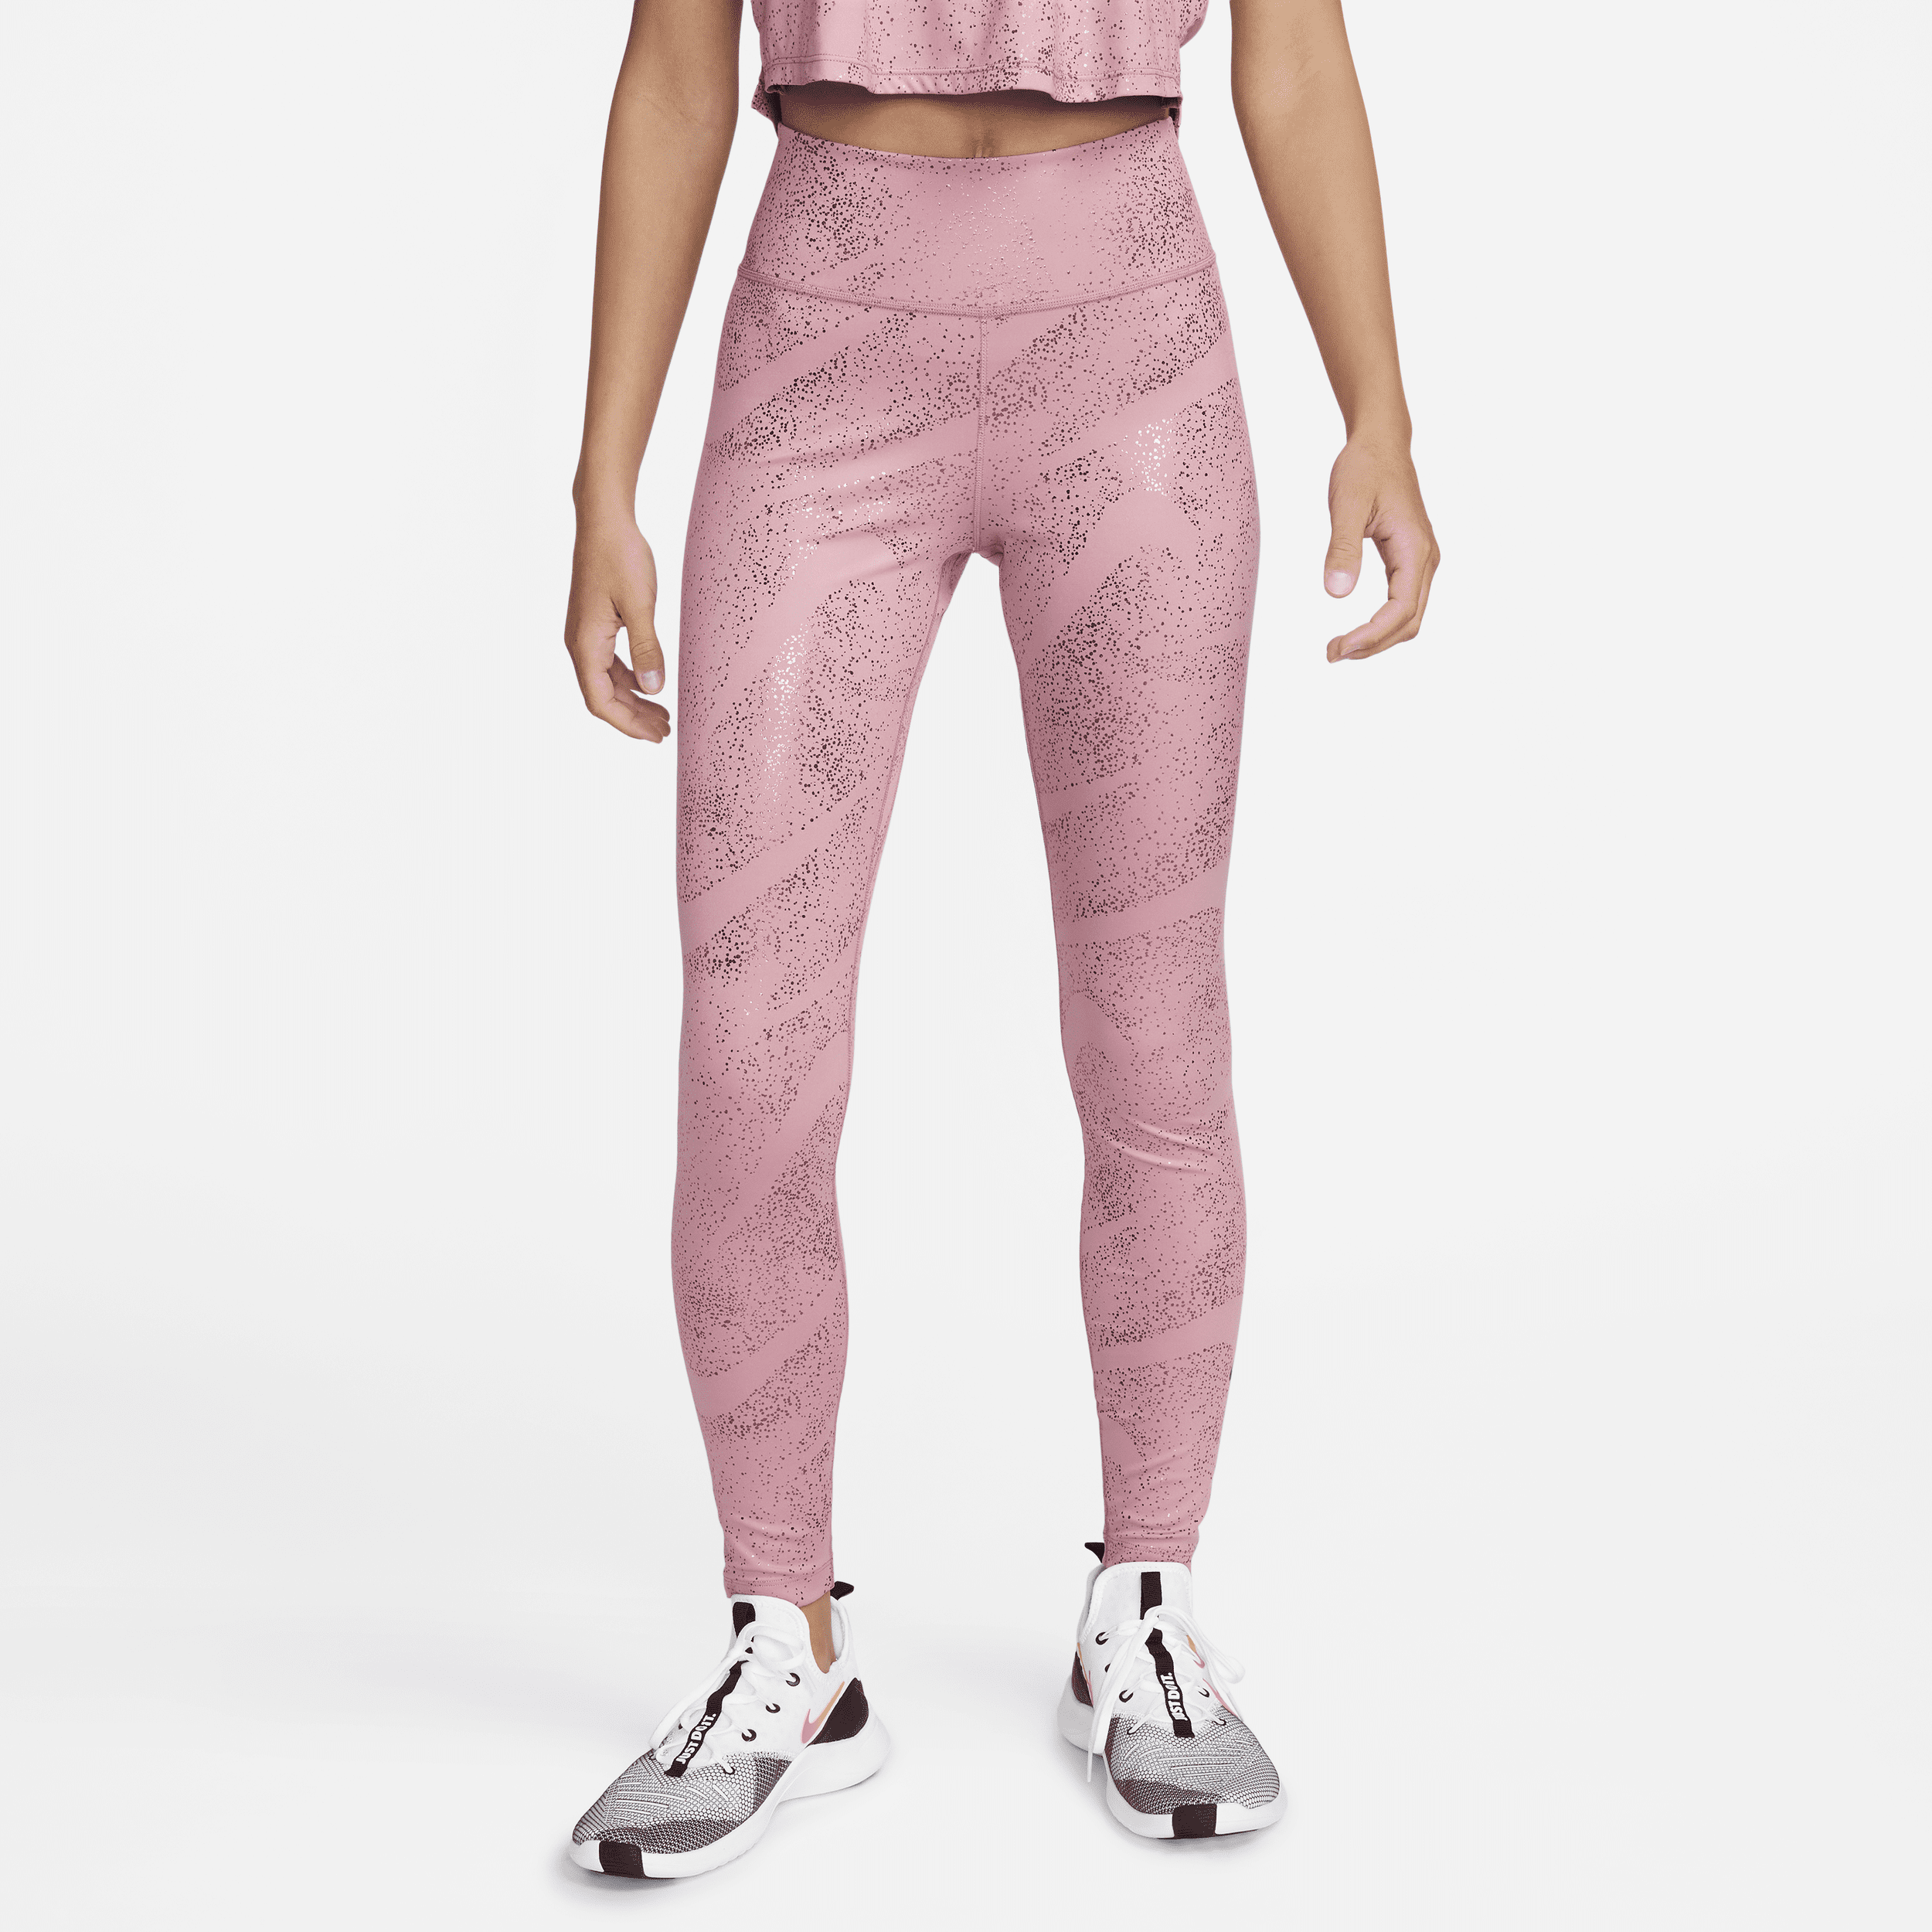 Nike Women's One Mid-rise Printed Leggings In Pink